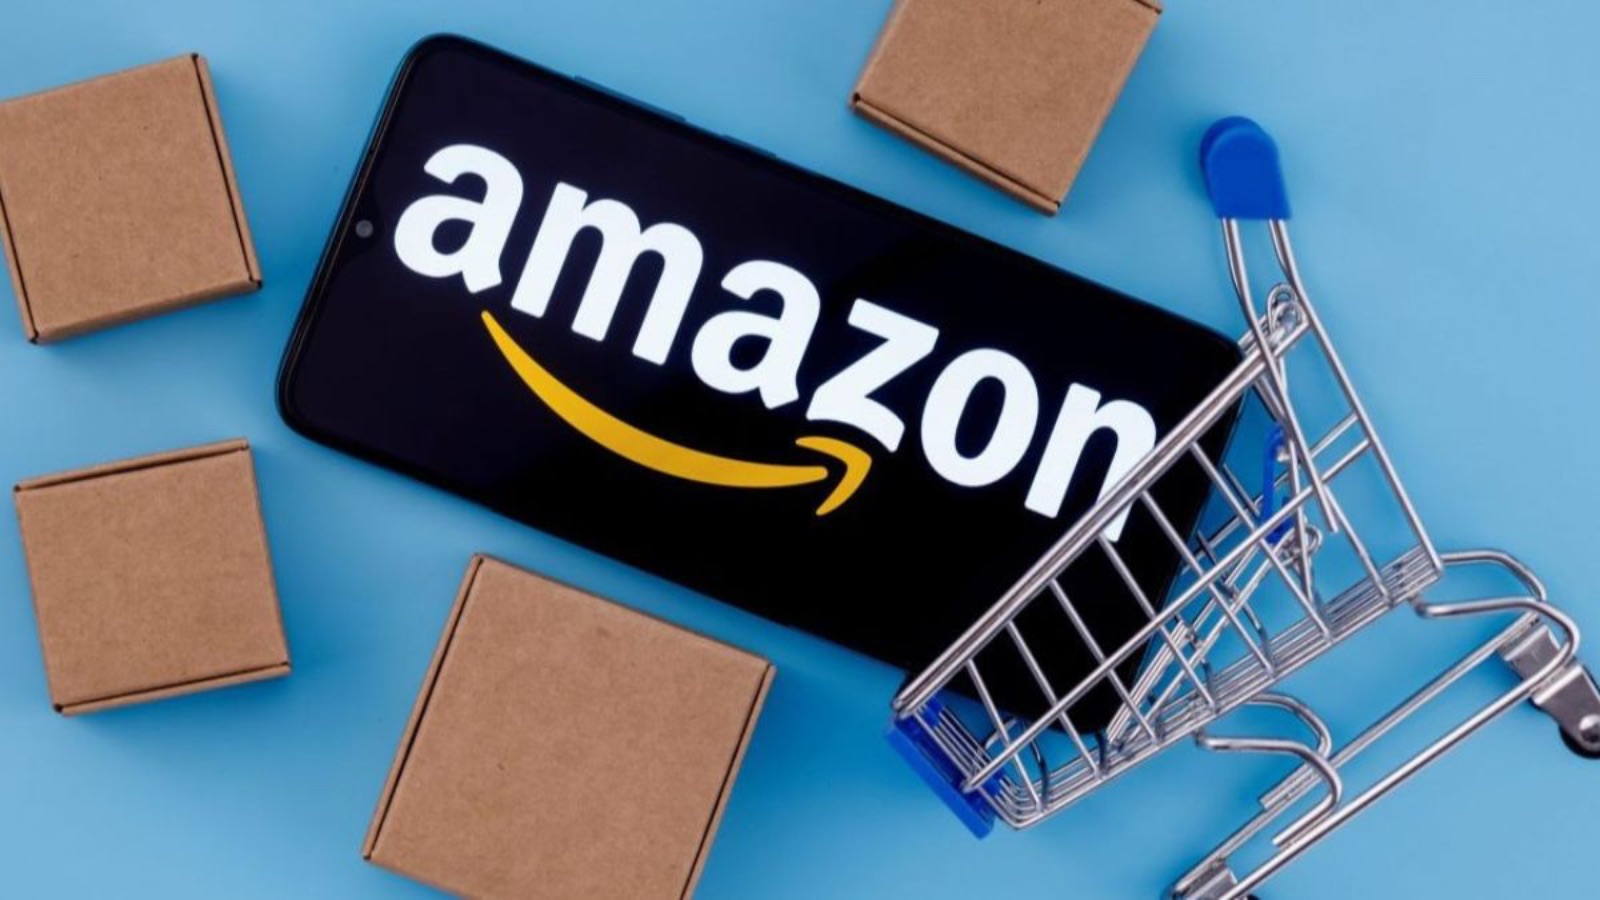 Amazon distrugge Unieuro, offerte Prime al 60% di sconto 